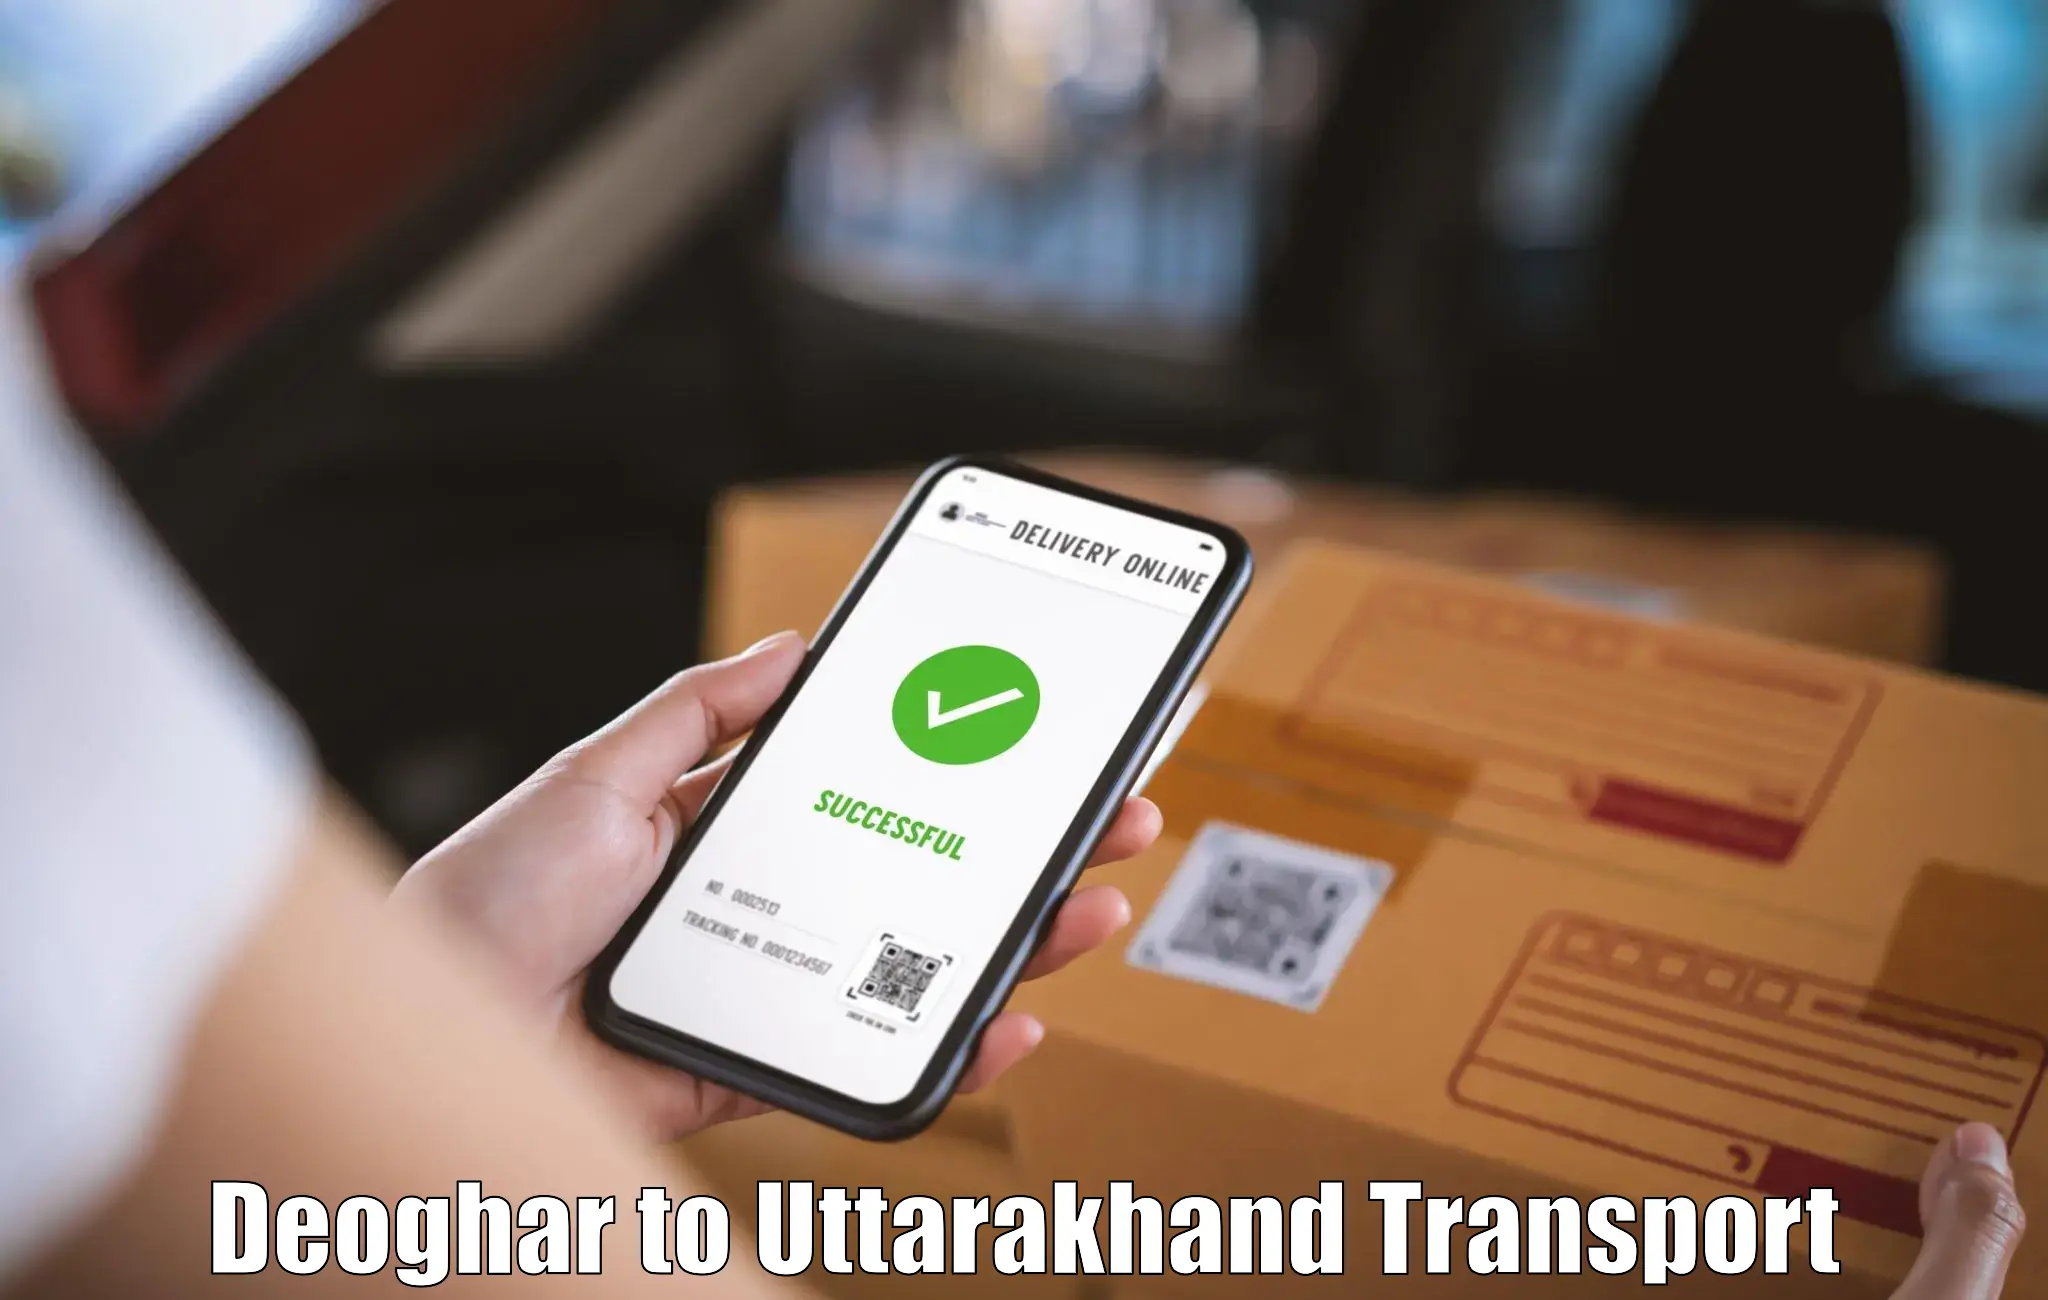 Transport shared services Deoghar to Sitarganj